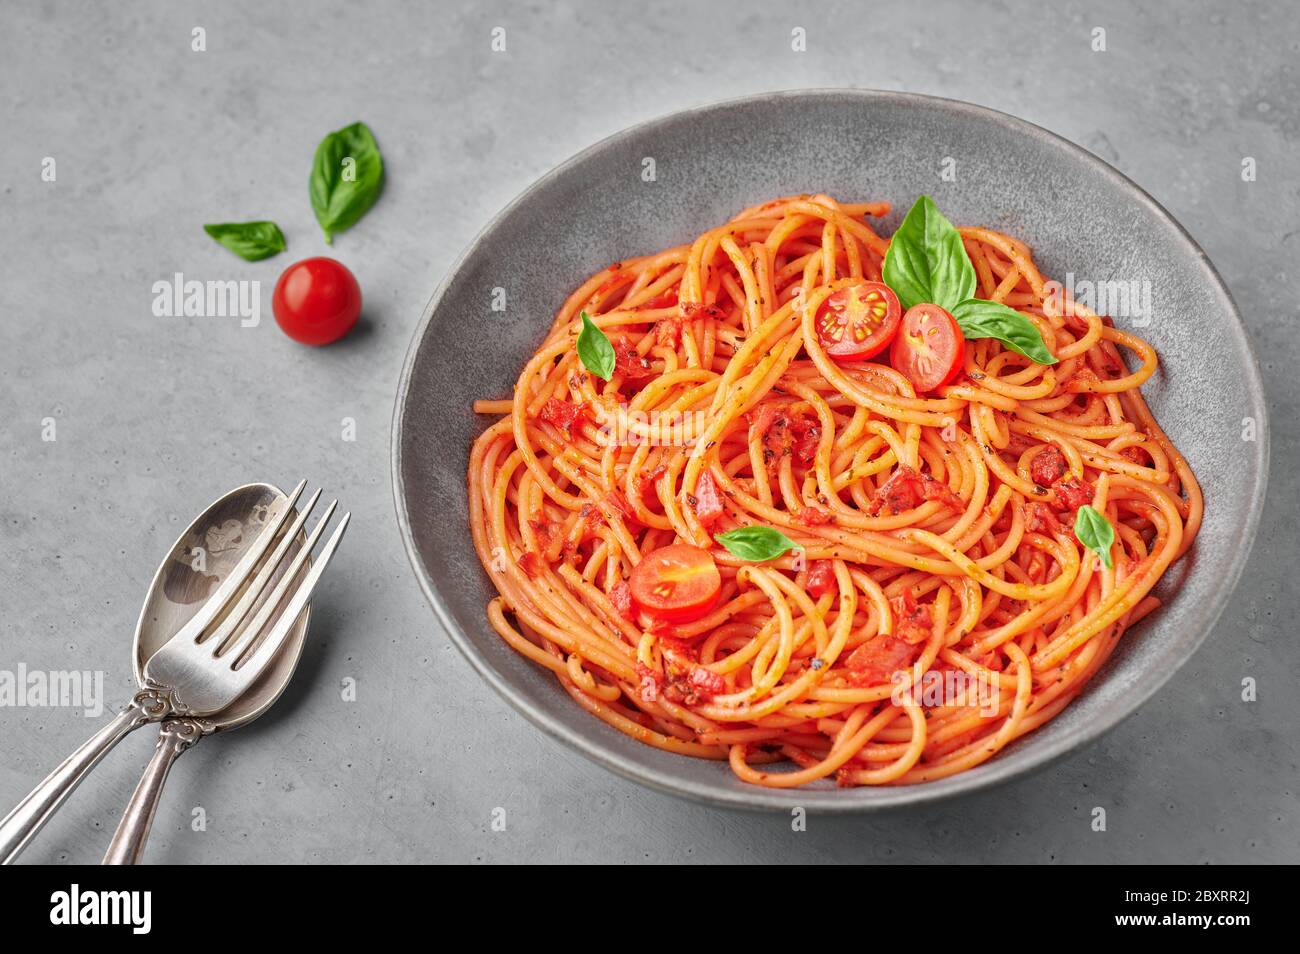 Spaghetti di pomodoro in ciotola grigia su fondo di cemento. La pasta con salsa di pomodoro è un piatto classico della cucina italiana. Popolare cucina italiana Foto Stock